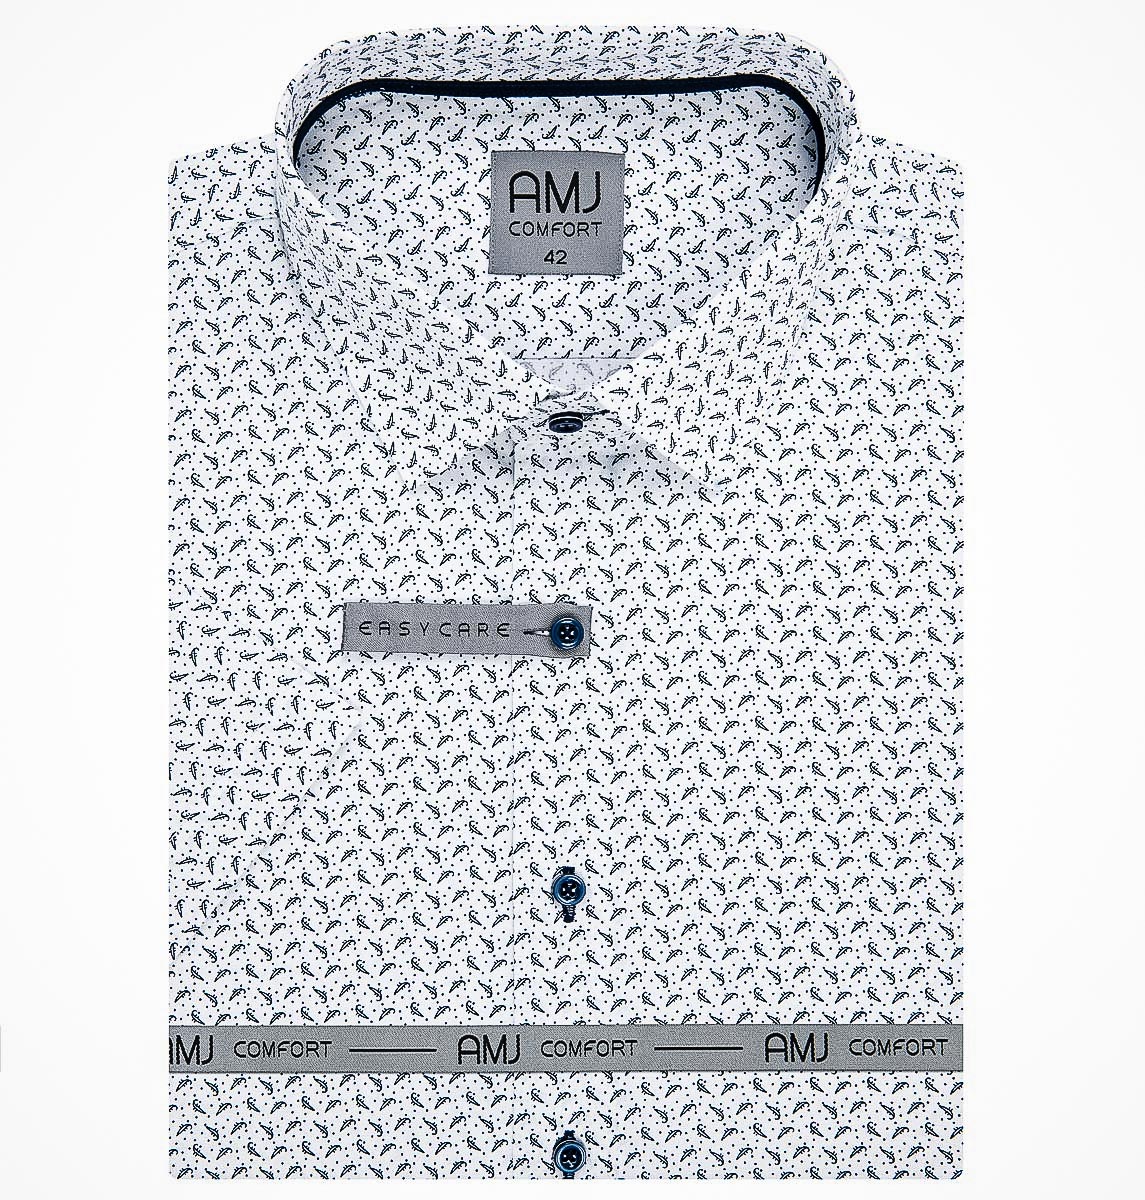 Pánská košile AMJ bavlněná, tmavě modré tečky a vlnky na bílé VKBR1138, krátký rukáv (regular + slim fit)